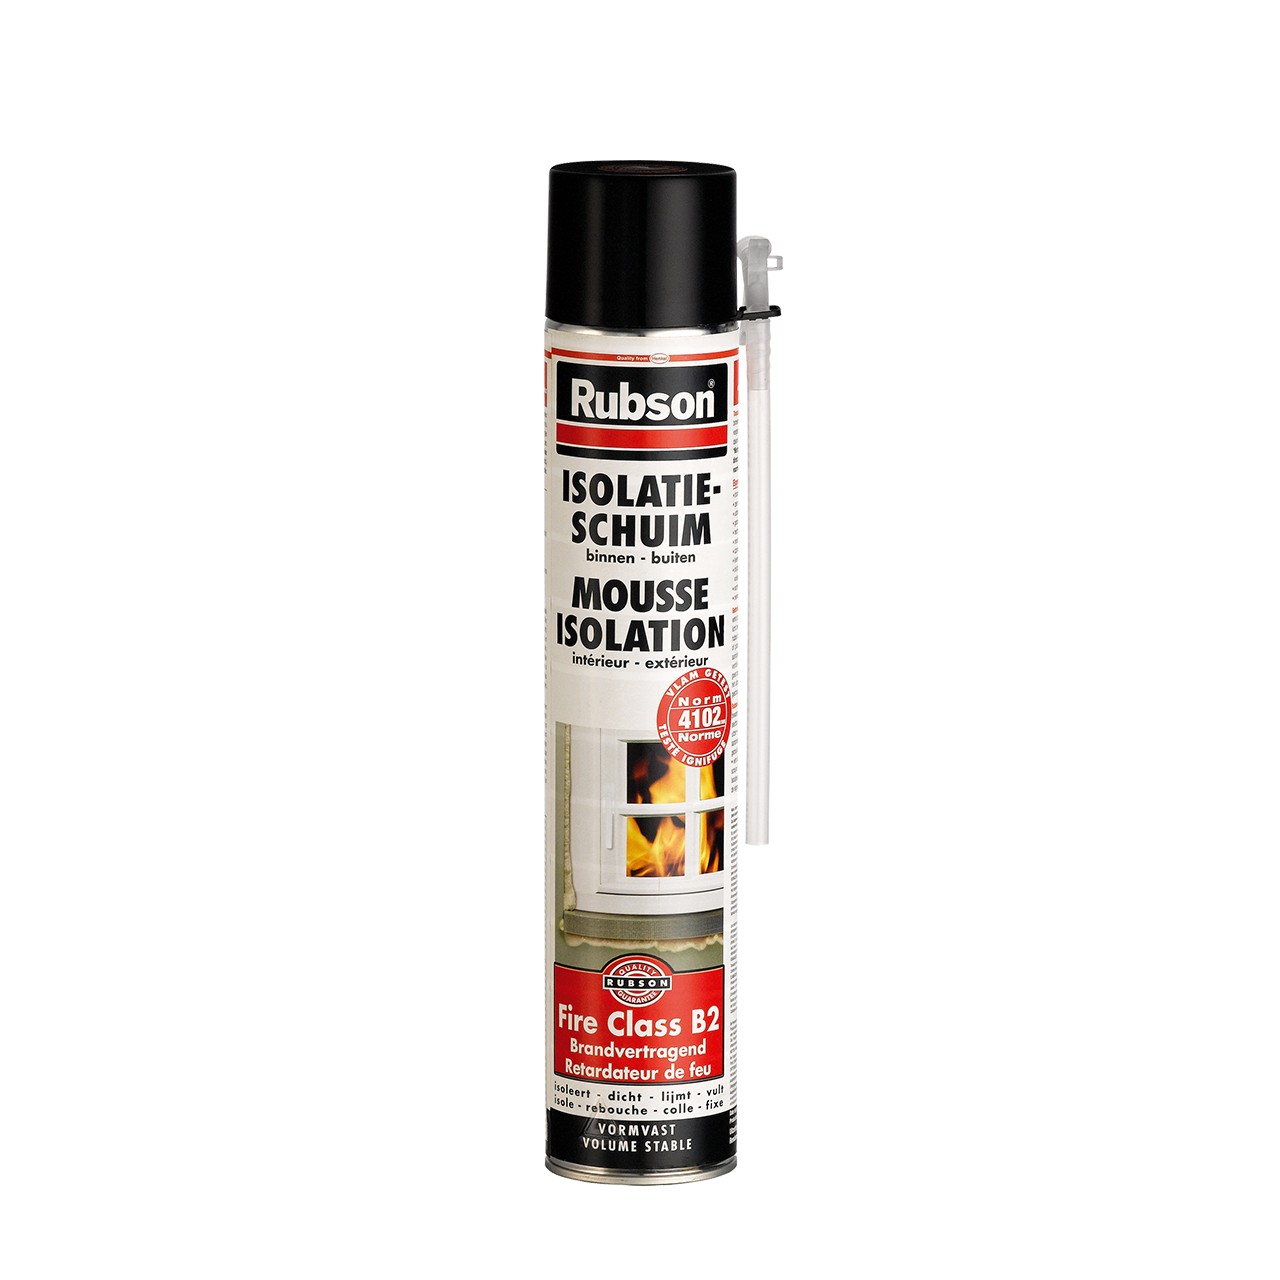 Rocflam : Protection thermique pour cheminée - Batiproduits